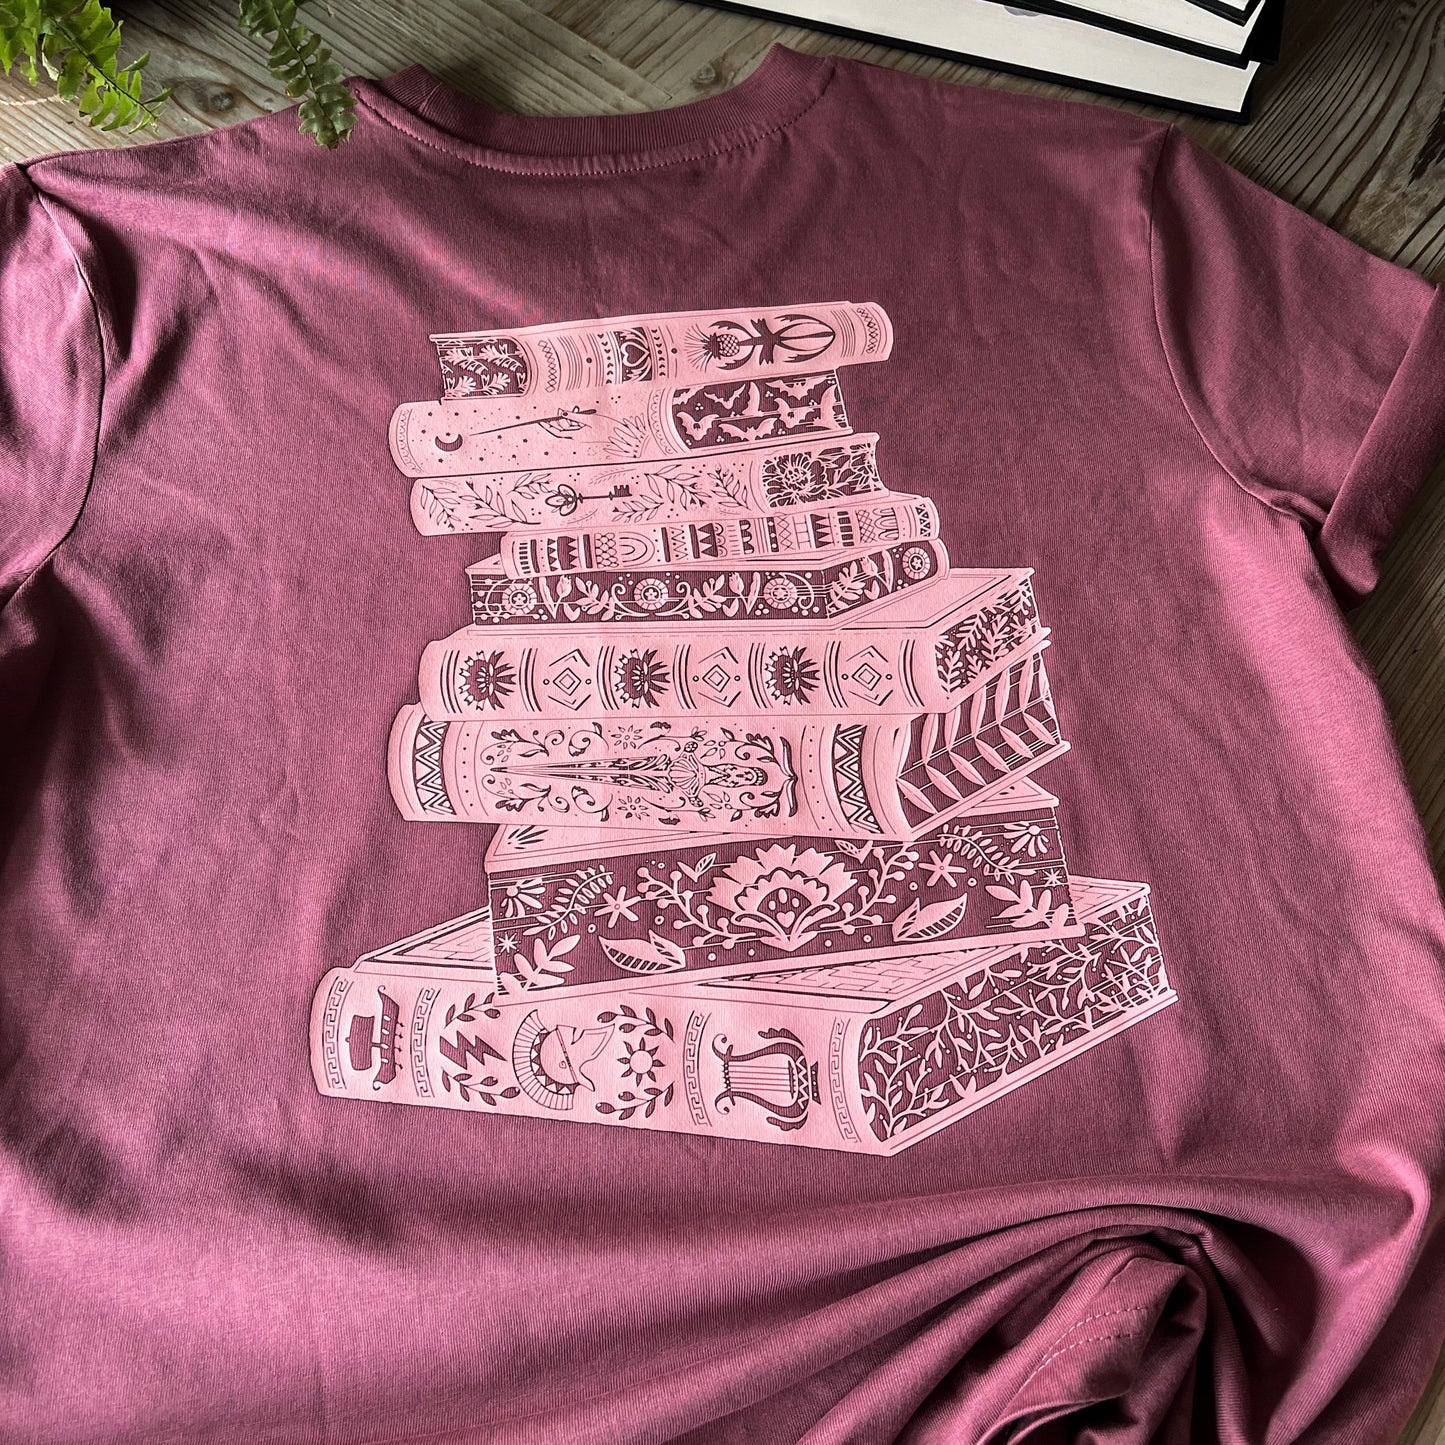 Book Lovers T-Shirt